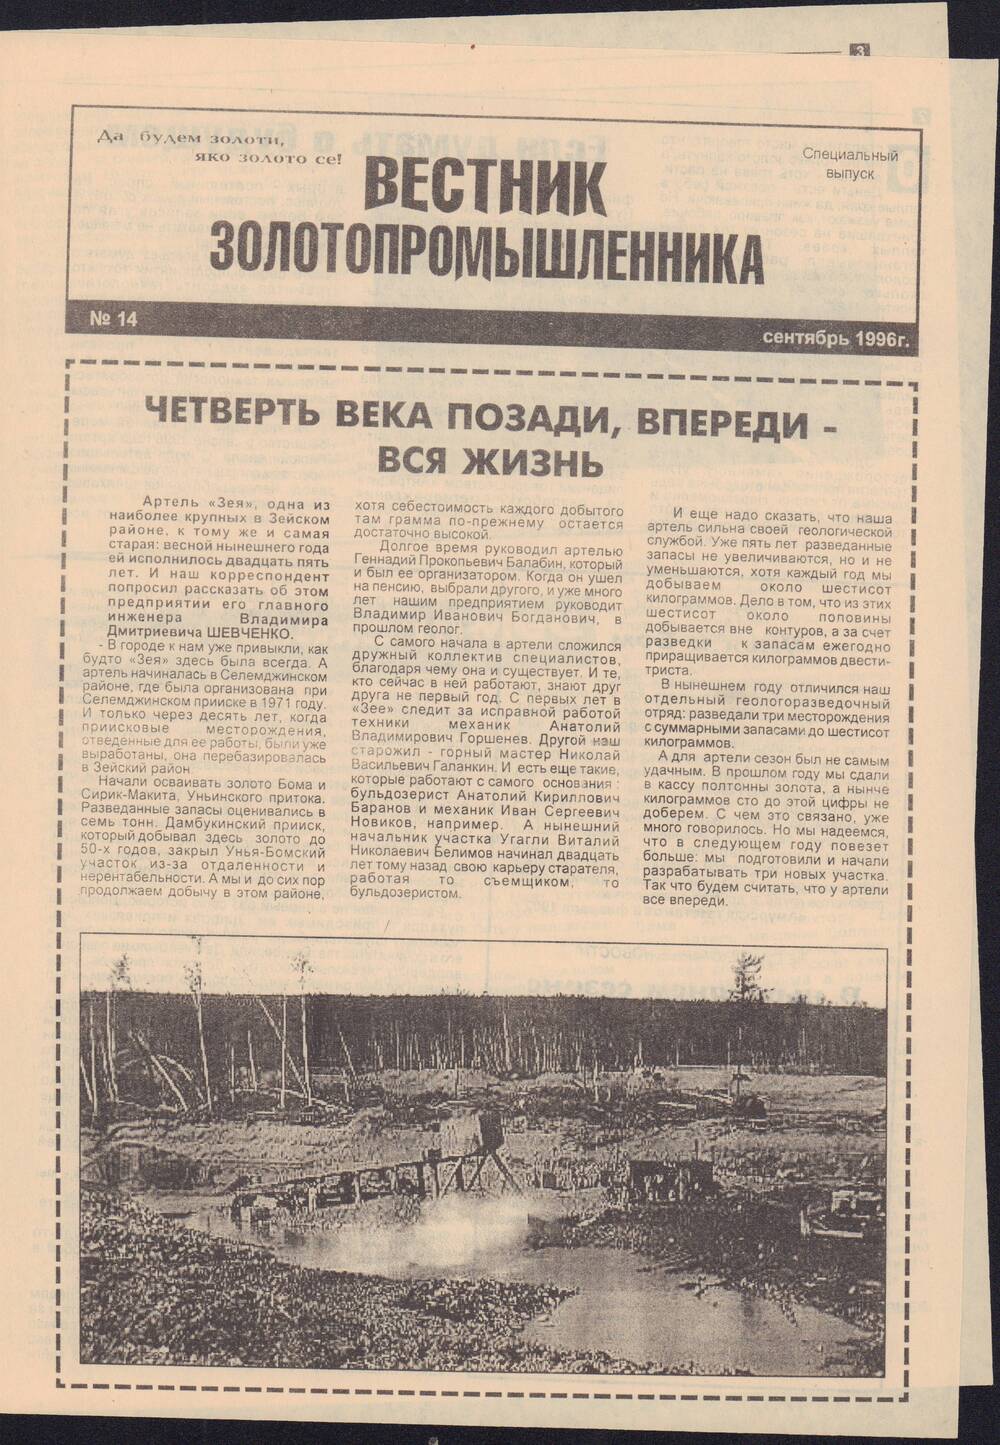 Газета Зейский вестник №113 от 19 сентября 1996 года со спецвыпуском №14 Вестник золотопромышленника.